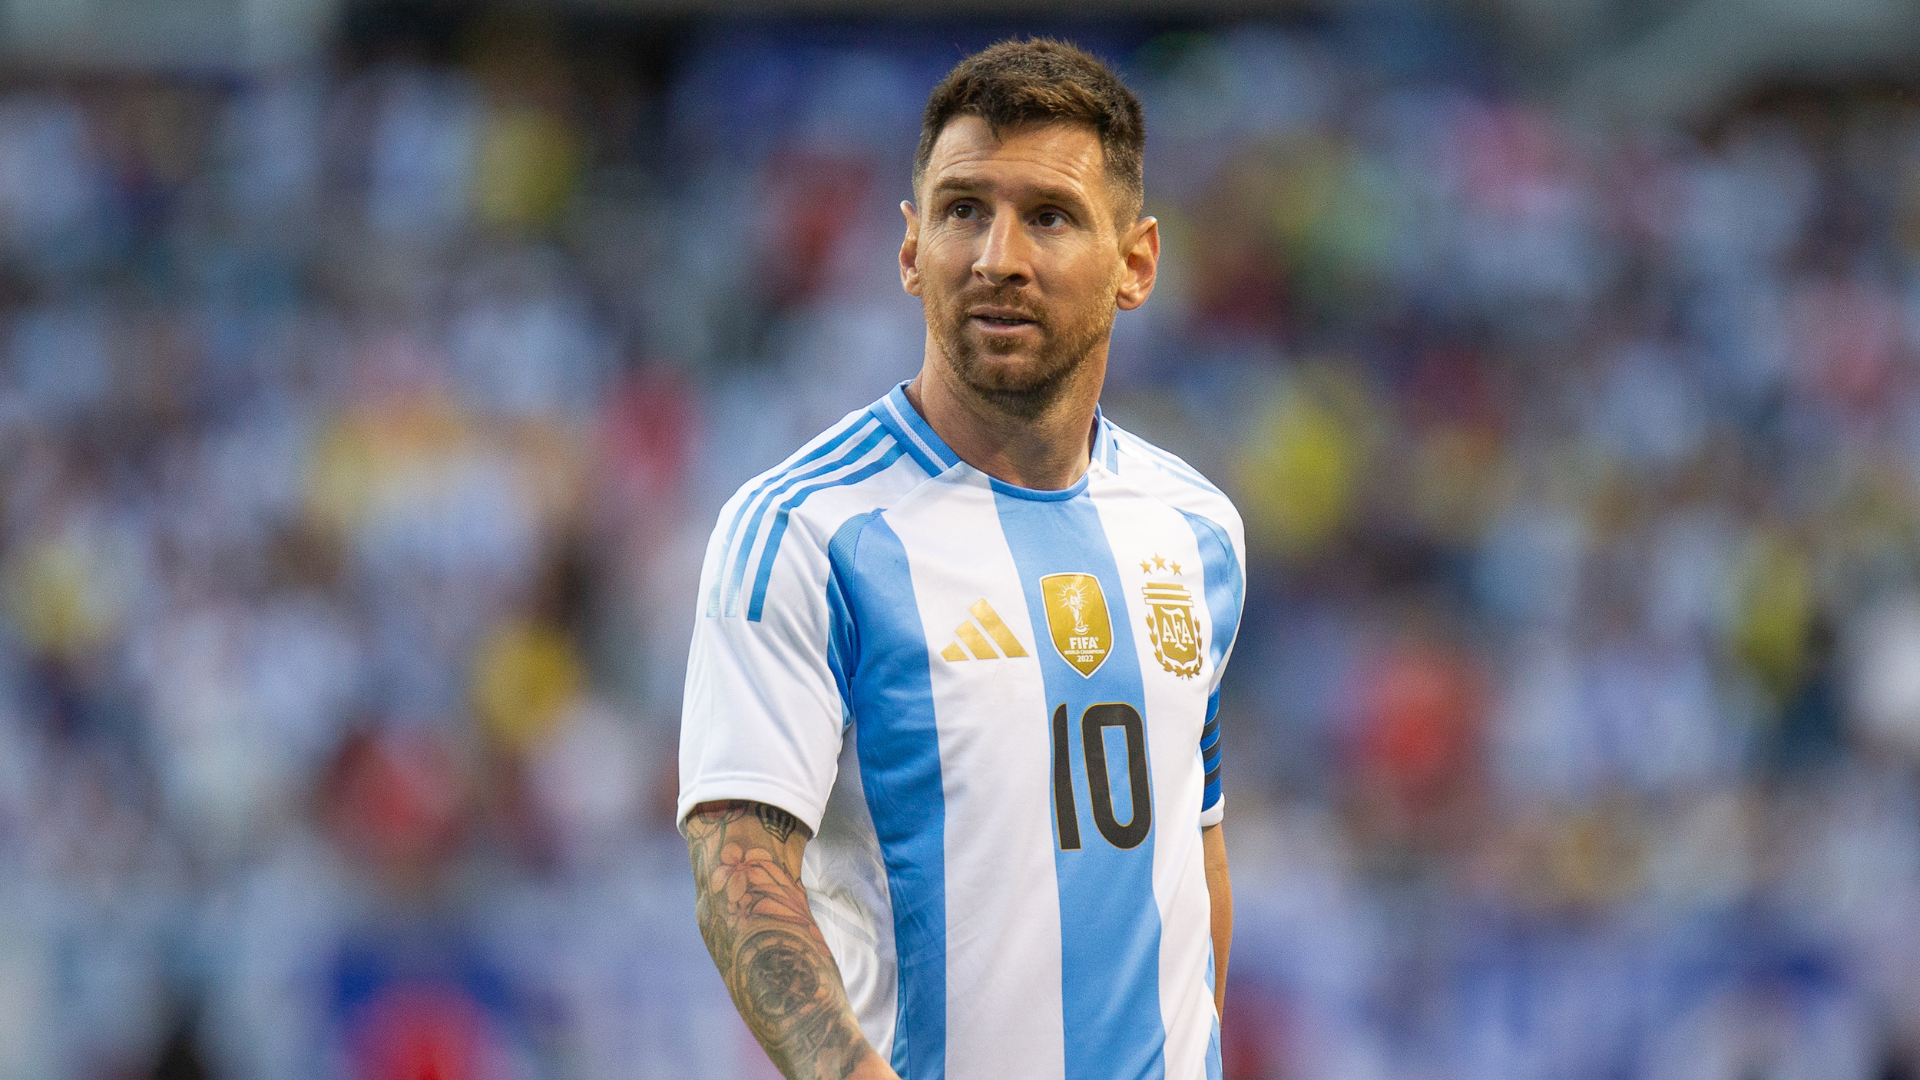 Messi: Carboni future of Argentina